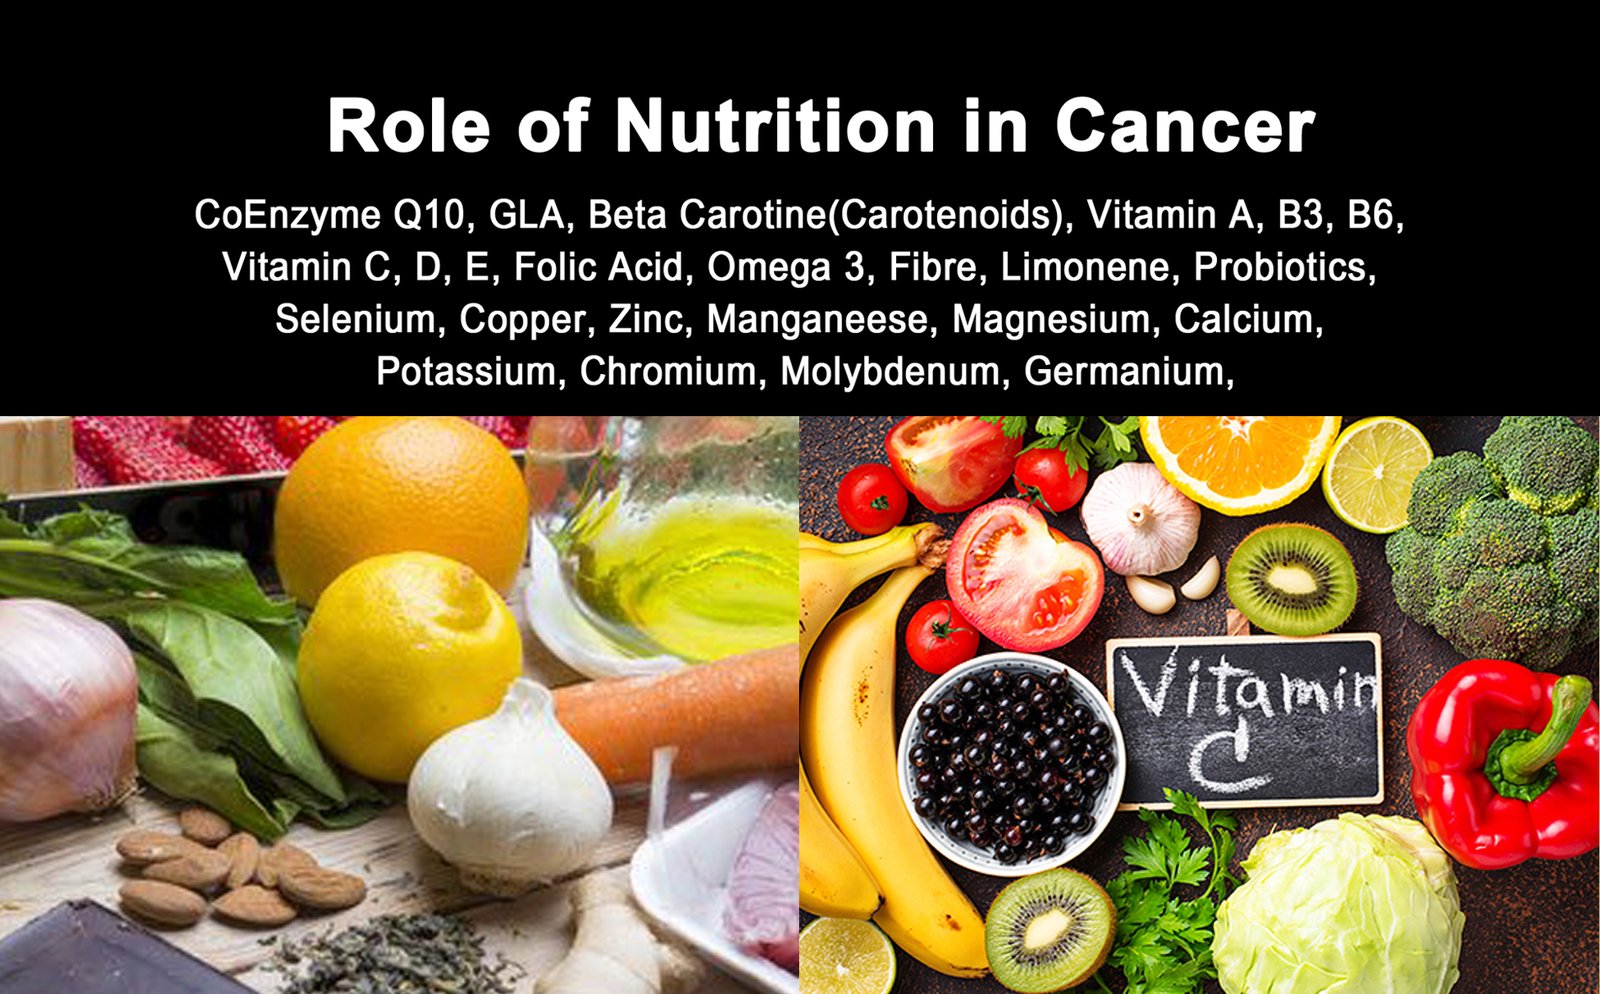 Role of Nutrition in Cancer – କ୍ୟାନସର ଚିକିତ୍ସାରେ ନ୍ୟୁଟ୍ରିସନ୍ ର ଭୂମିକା ଅତି ଗୁରୁତ୍ତ୍ୱପୂର୍ଣ